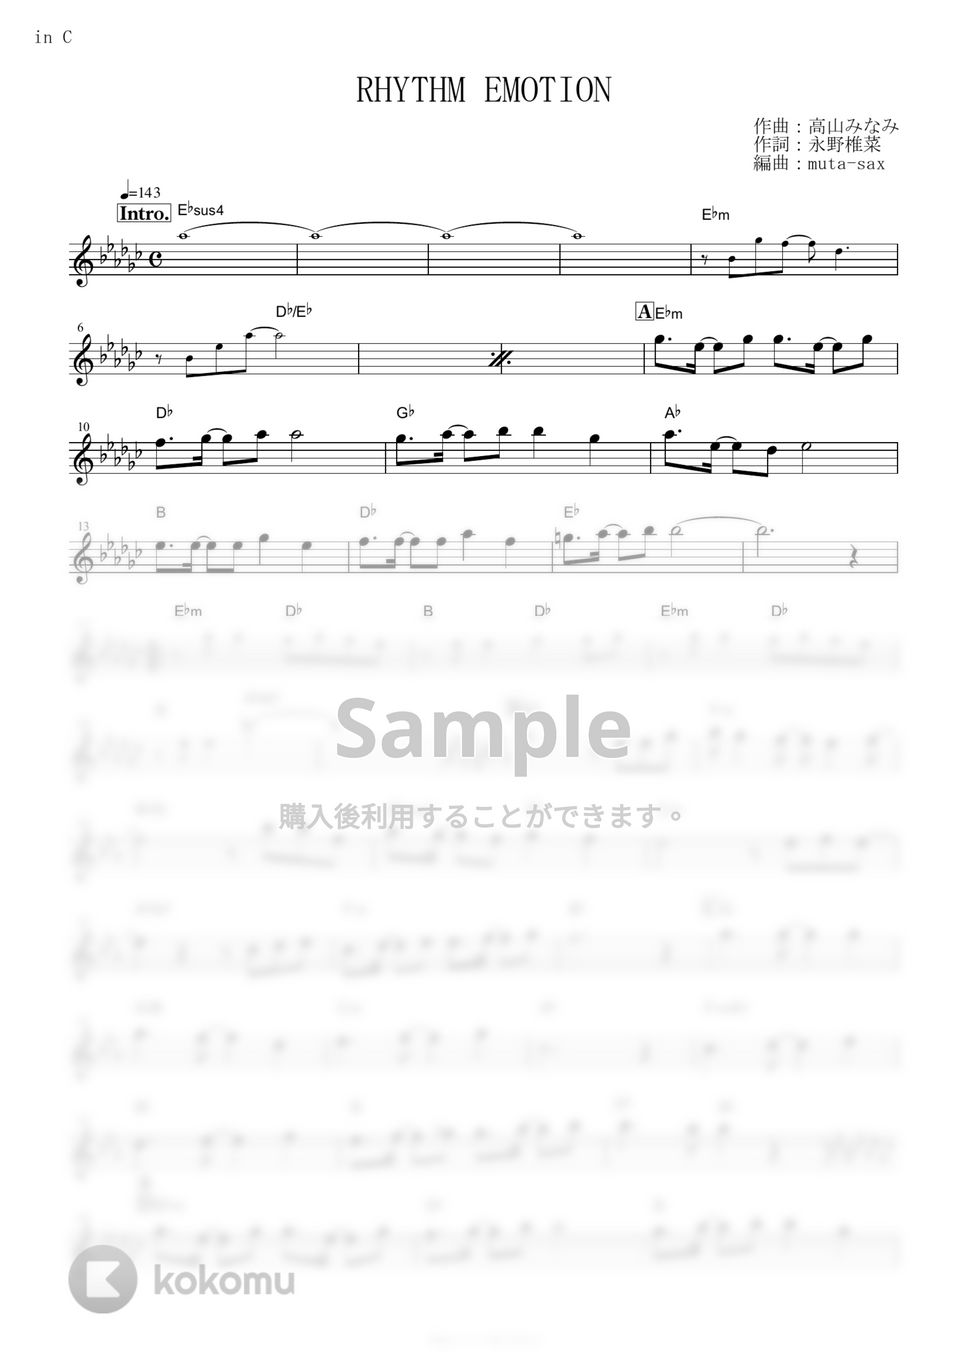 TWO-MIX - RHYTHM EMOTION (『新機動戦記ガンダムW』 / in C) by muta-sax